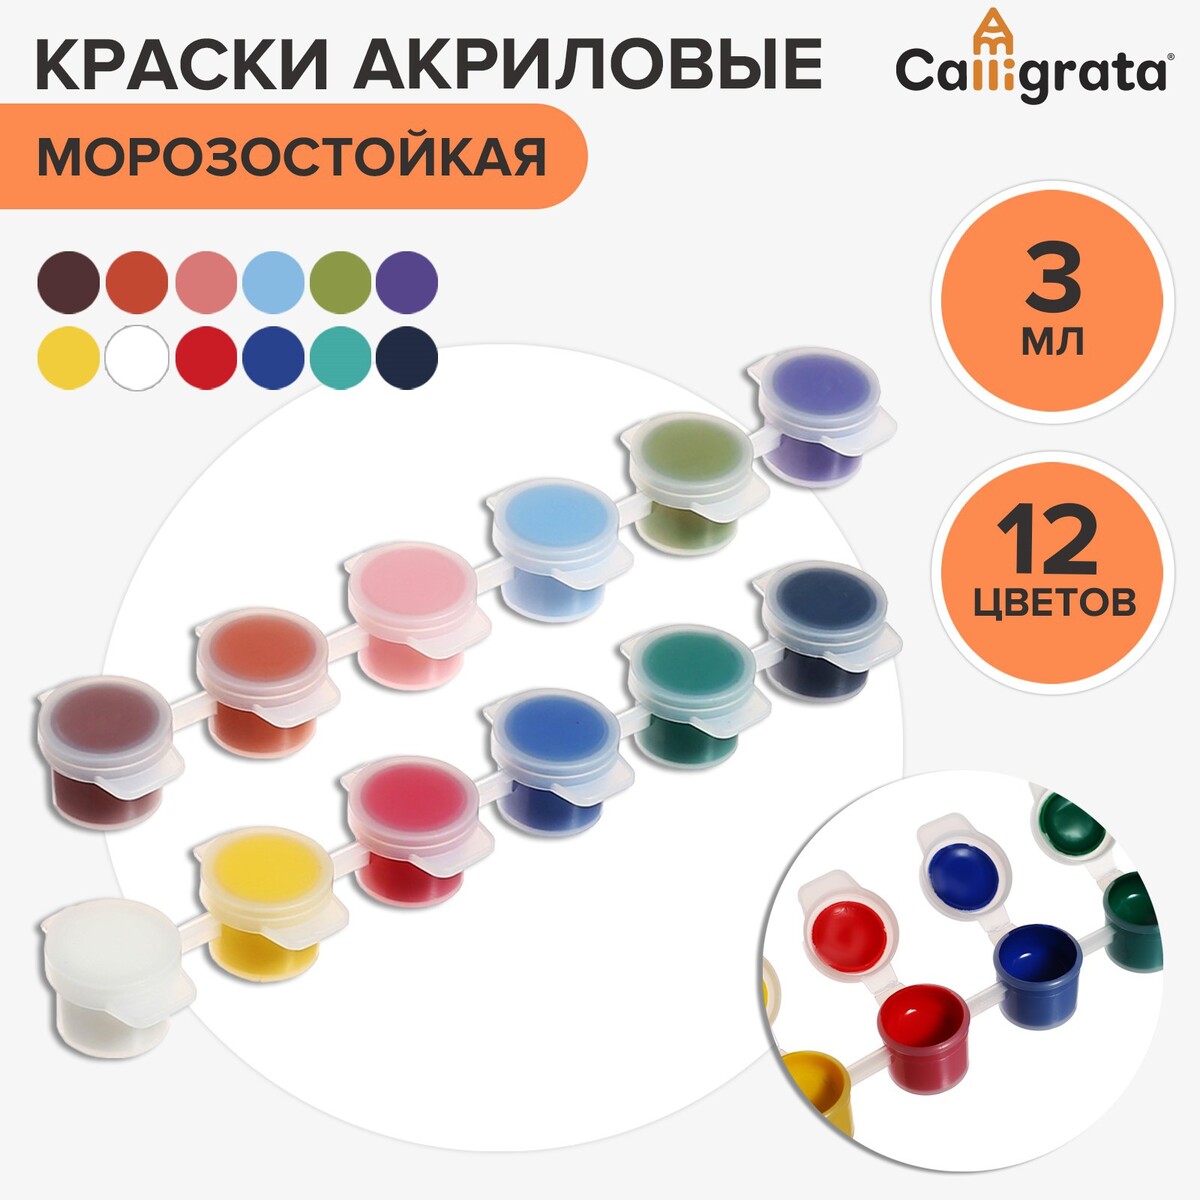 Краска акриловая, набор 12 цветов х 3 мл, calligrata, морозостойкие, в пакете акриловая шпатлёвка для внутренних работ 1 5 кг